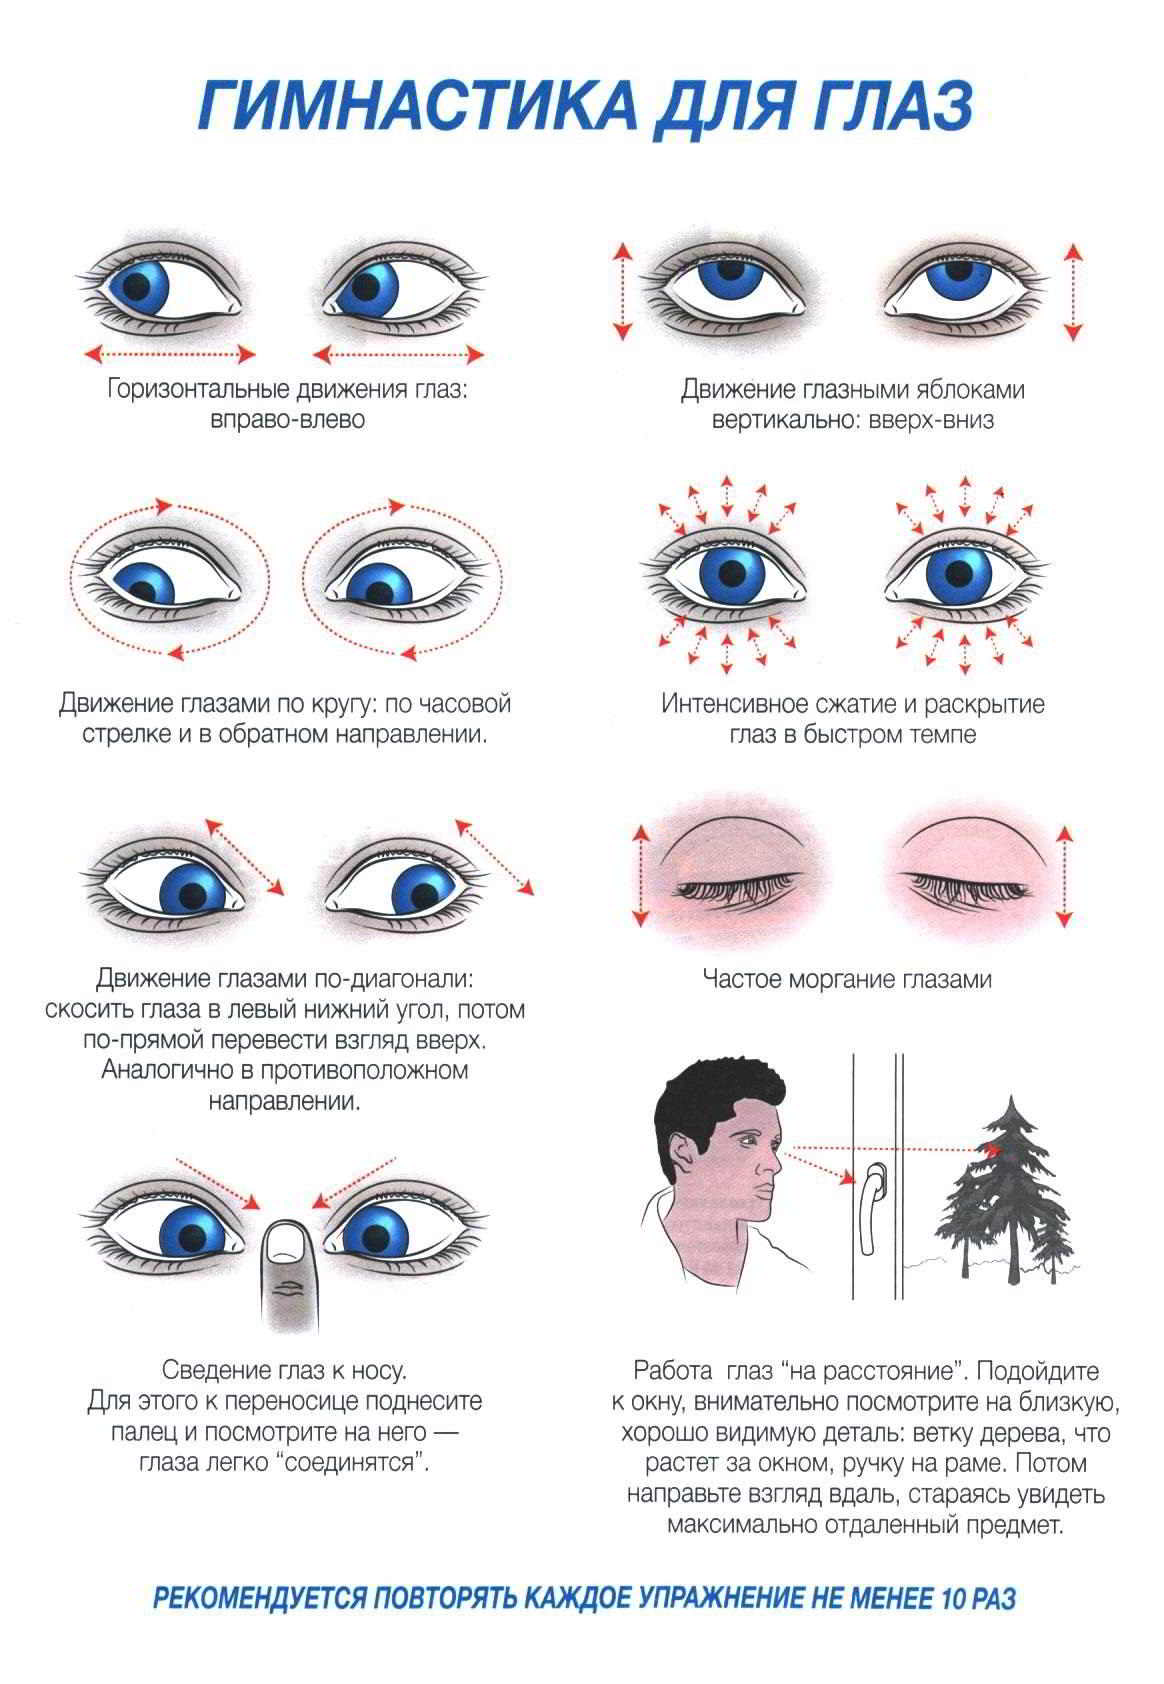 Упражнения восстанавливающие зрение. Упражнения для глаз для улучшения зрения для детей 10 лет. Гимнастика для глаз 10 упражнений для улучшения зрения. Гимнастика для глаз для восстановления зрения близорукость у детей. Комплекс упражнений для глаз 10 упражнений.